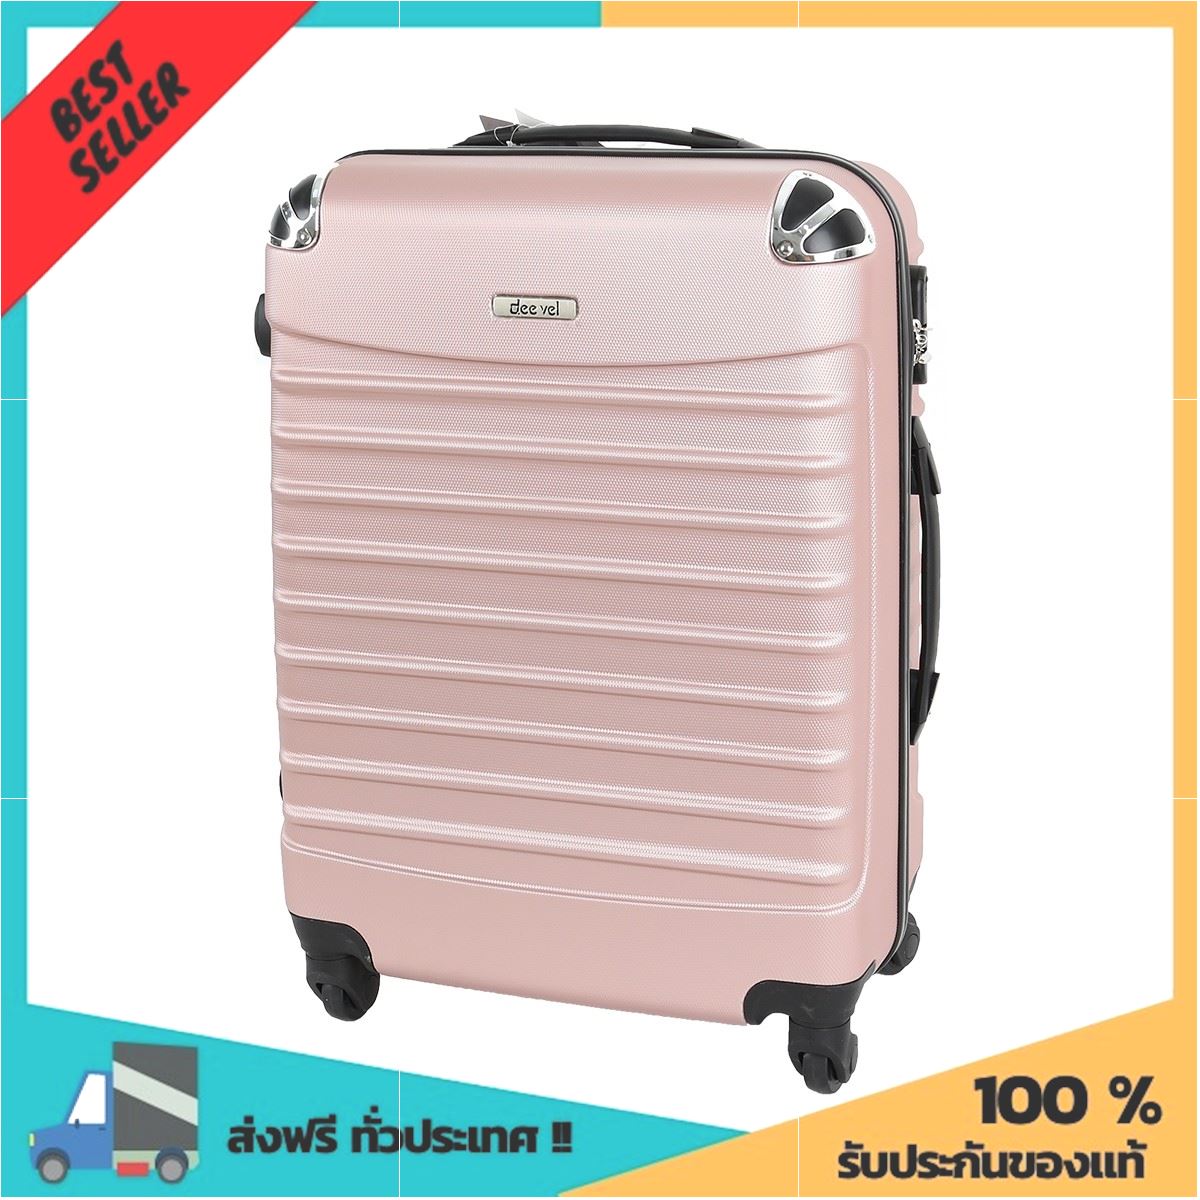 กระเป๋าเดินทางไฟเบอร์ ขนาด 24 นิ้ว รุ่น DM0046-2 สีชมพู ของมันต้องมี !!